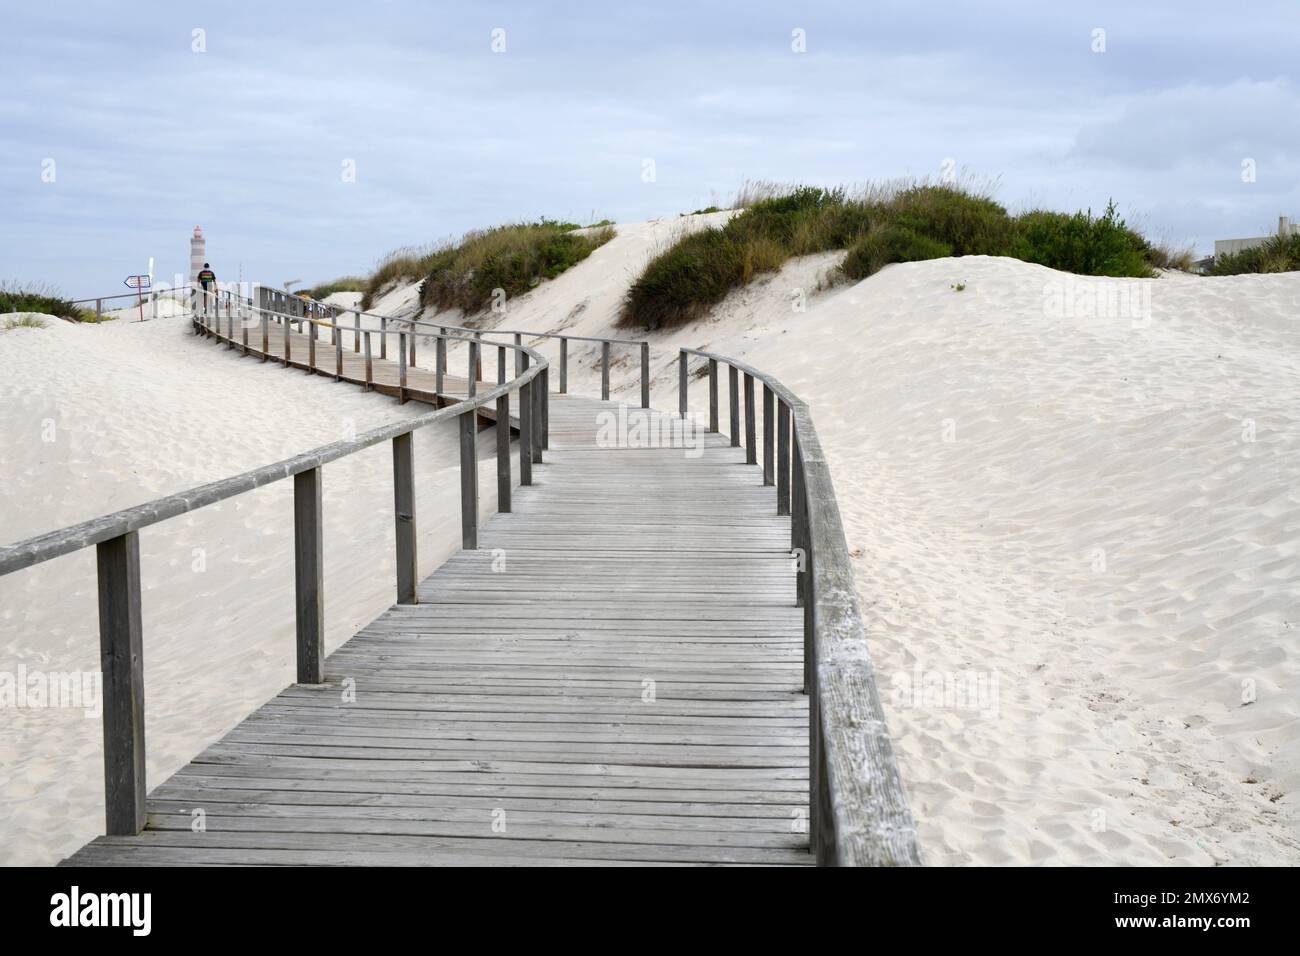 Barra (côte d'Aveiro), dunes et passerelle en bois. Région du Centro, Portugal. Banque D'Images